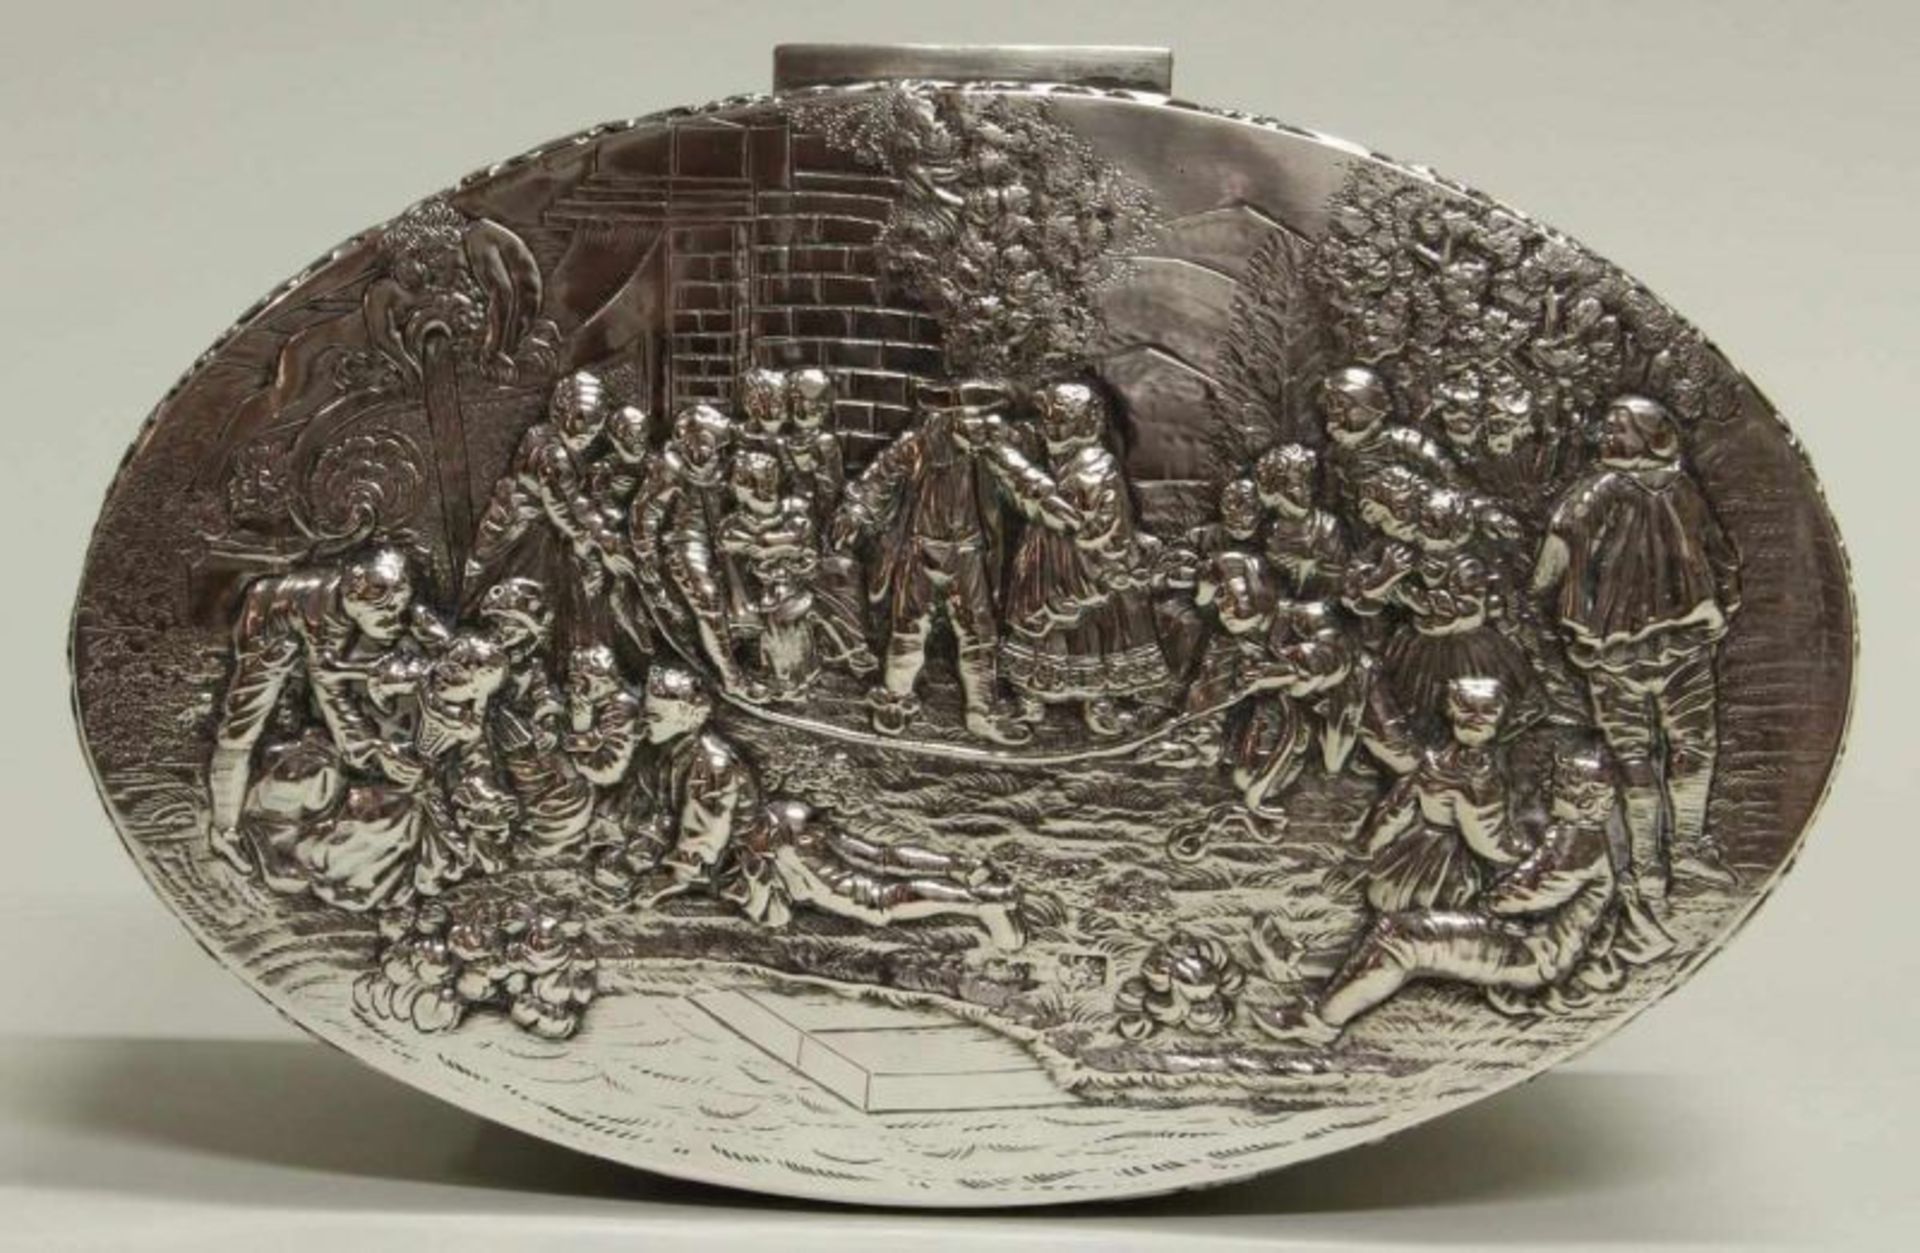 Gebäckdose, Silber 800, Hanau, Schleißner & Söhne, Reliefdekor mit spielenden Kindern, - Image 2 of 2